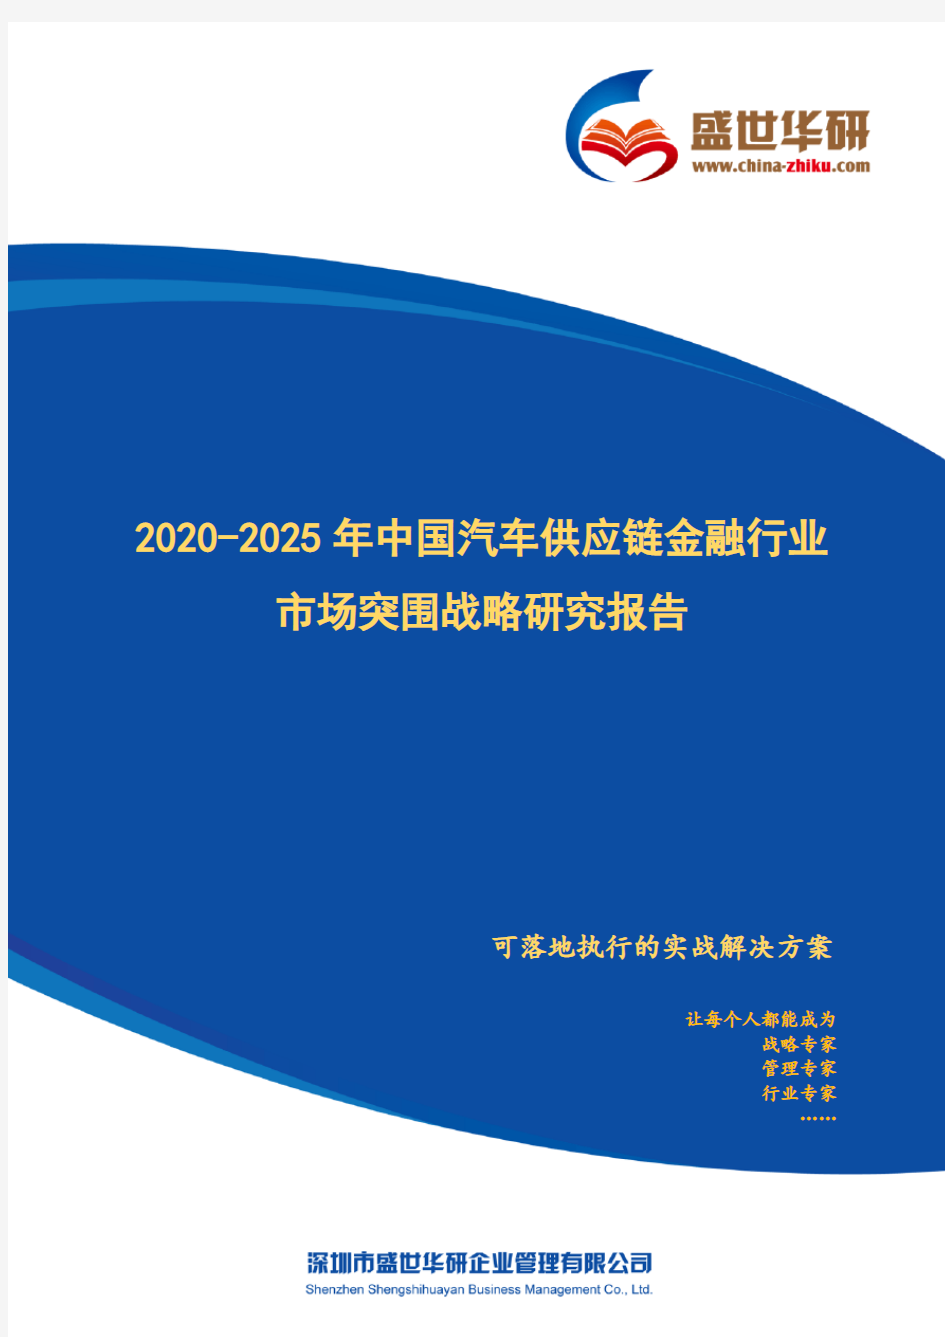 【完整版】2020-2025年中国汽车供应链金融行业市场突围策略研究报告